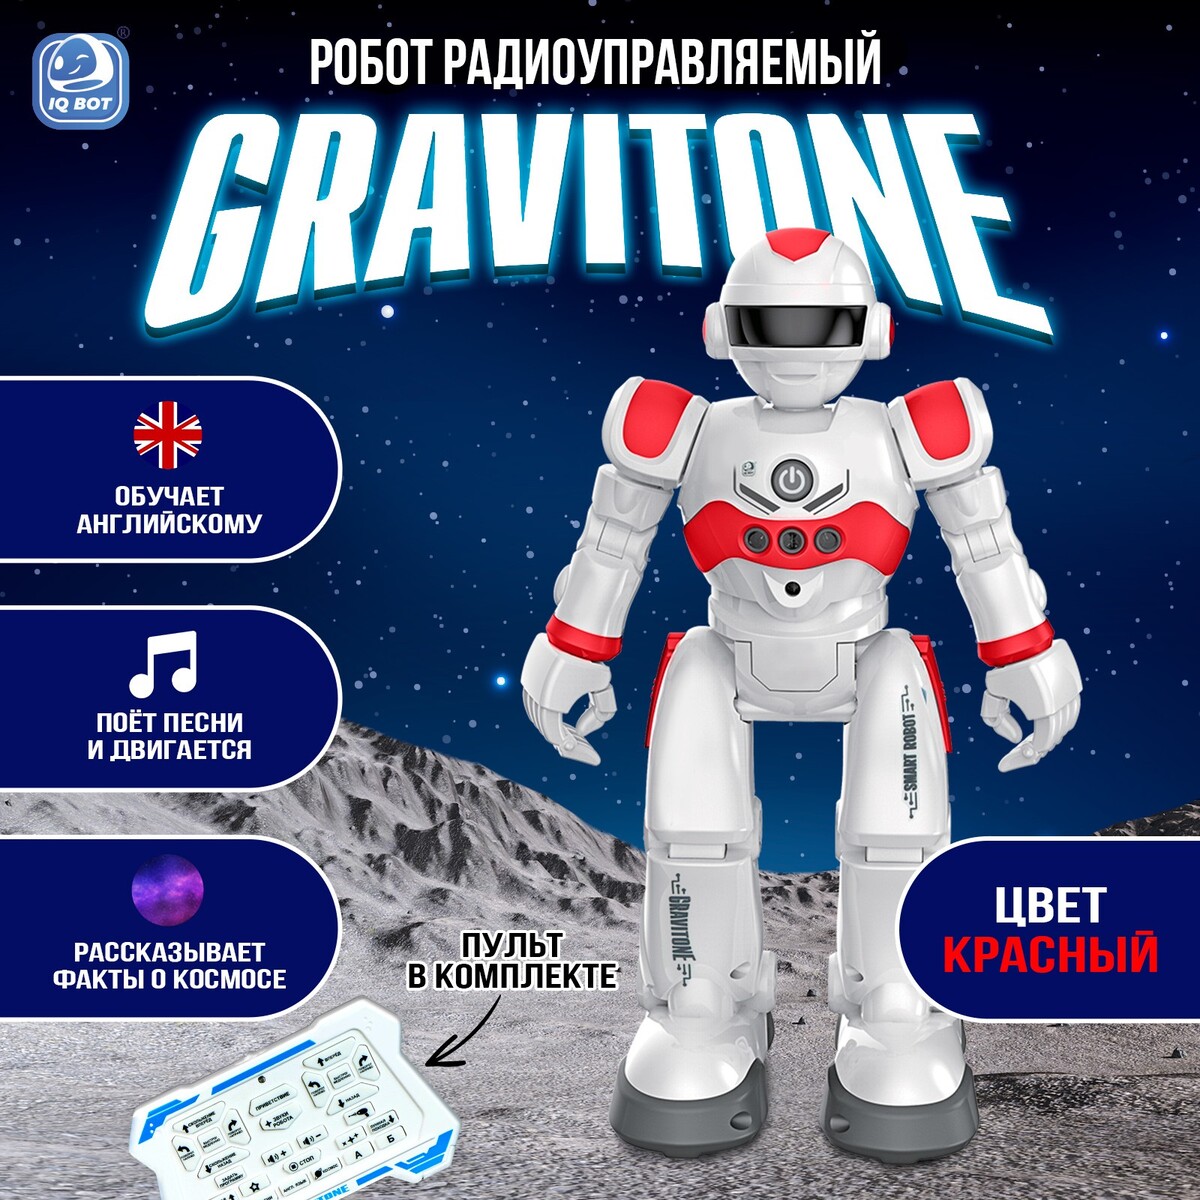 Робот радиоуправляемый iq bot gravitone, русское озвучивание, цвет красный робот радиоуправляемый iq bot gravitone русское озвучивание красный